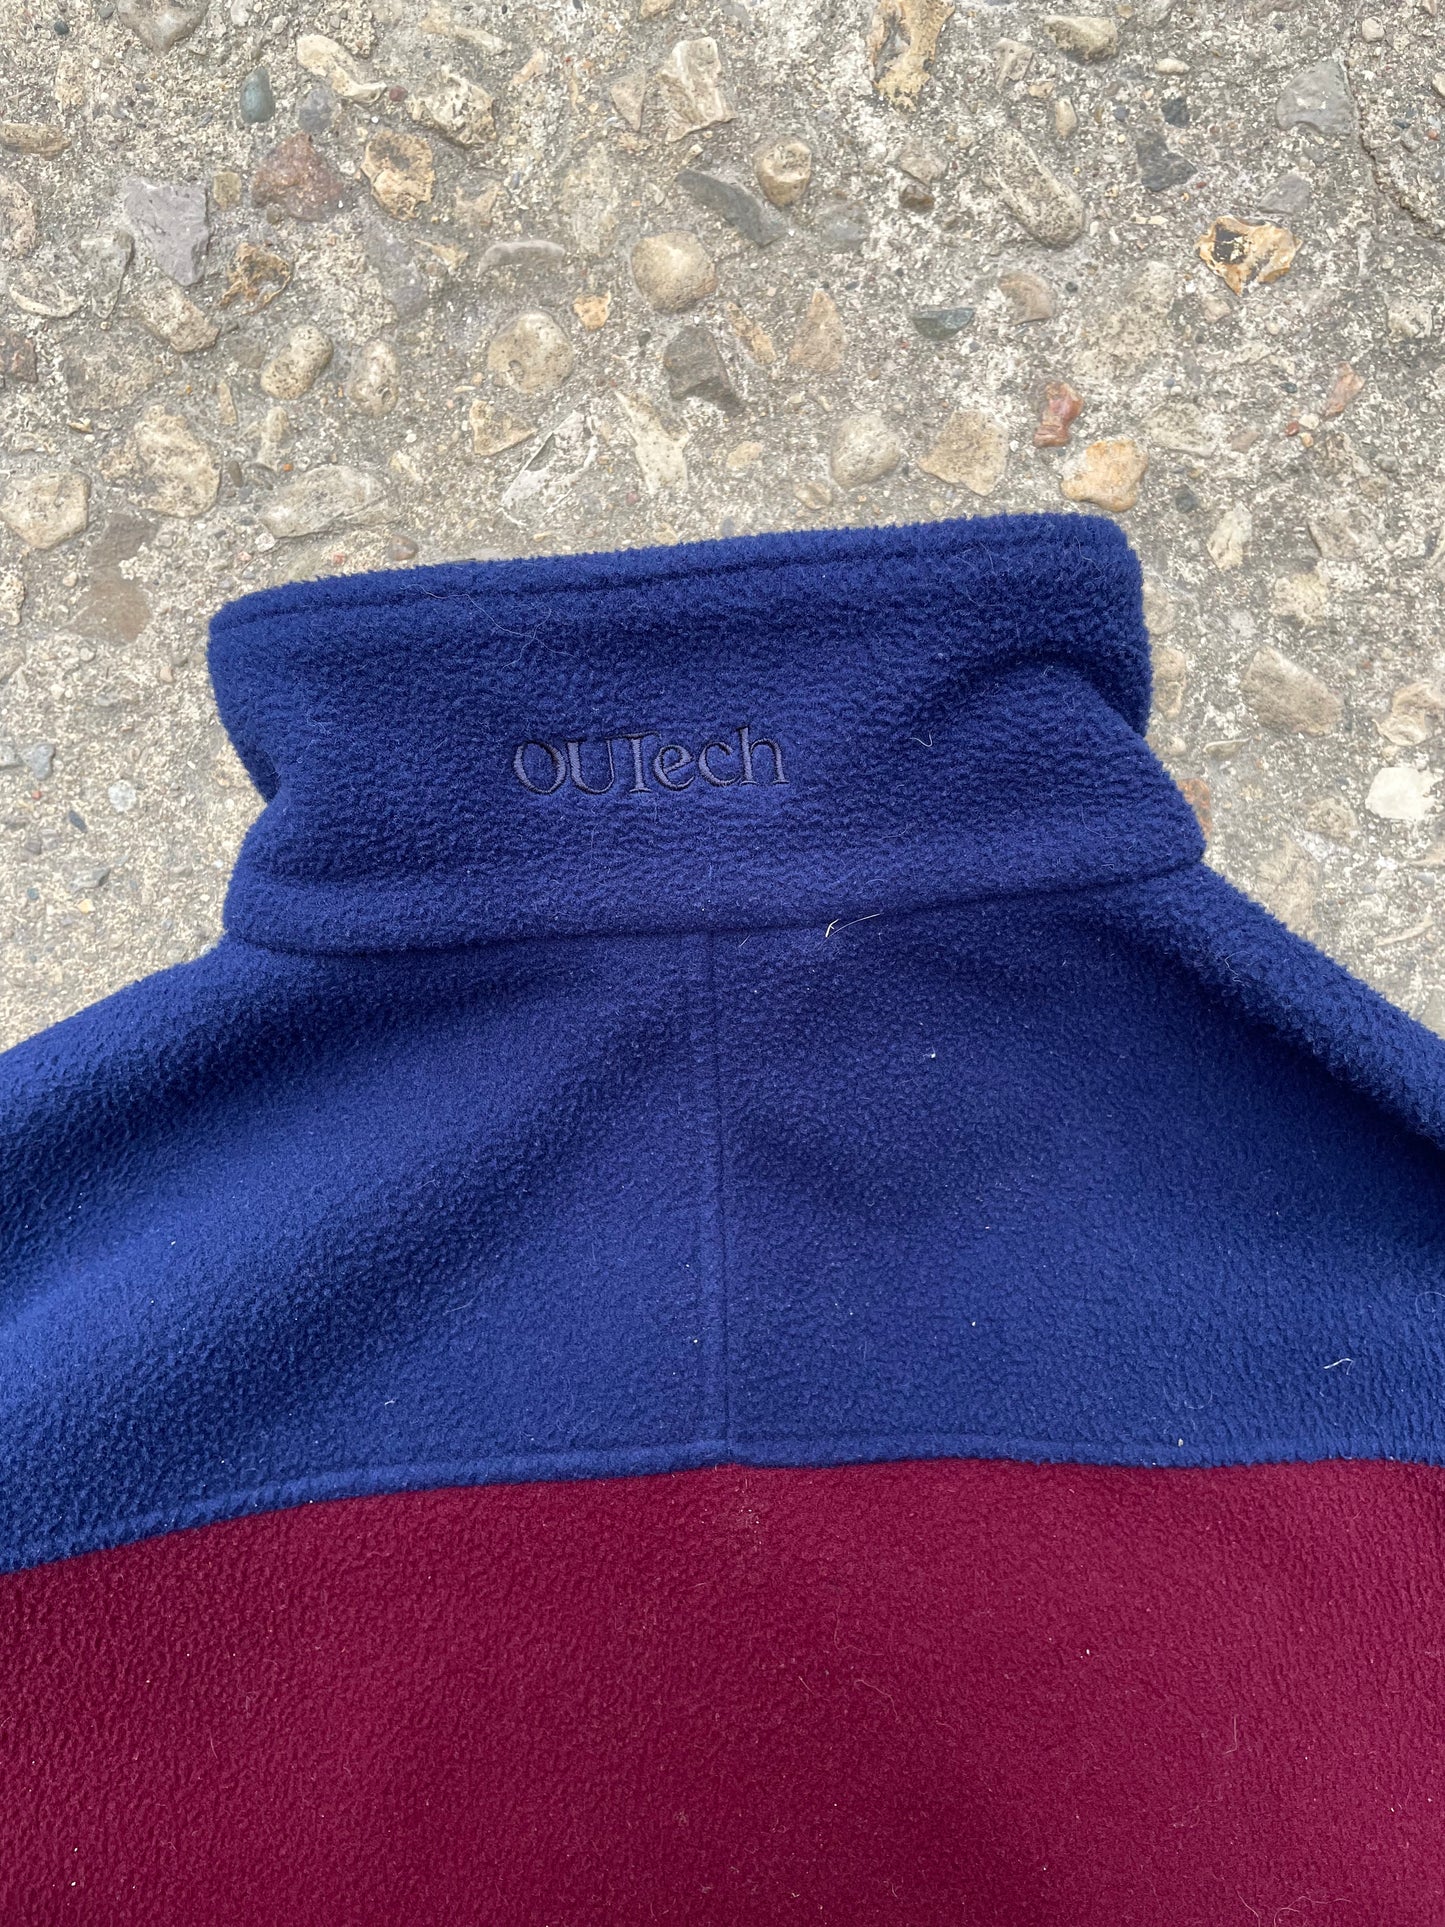 1990's OUTech Asymmetrical Zip Fleece - XL